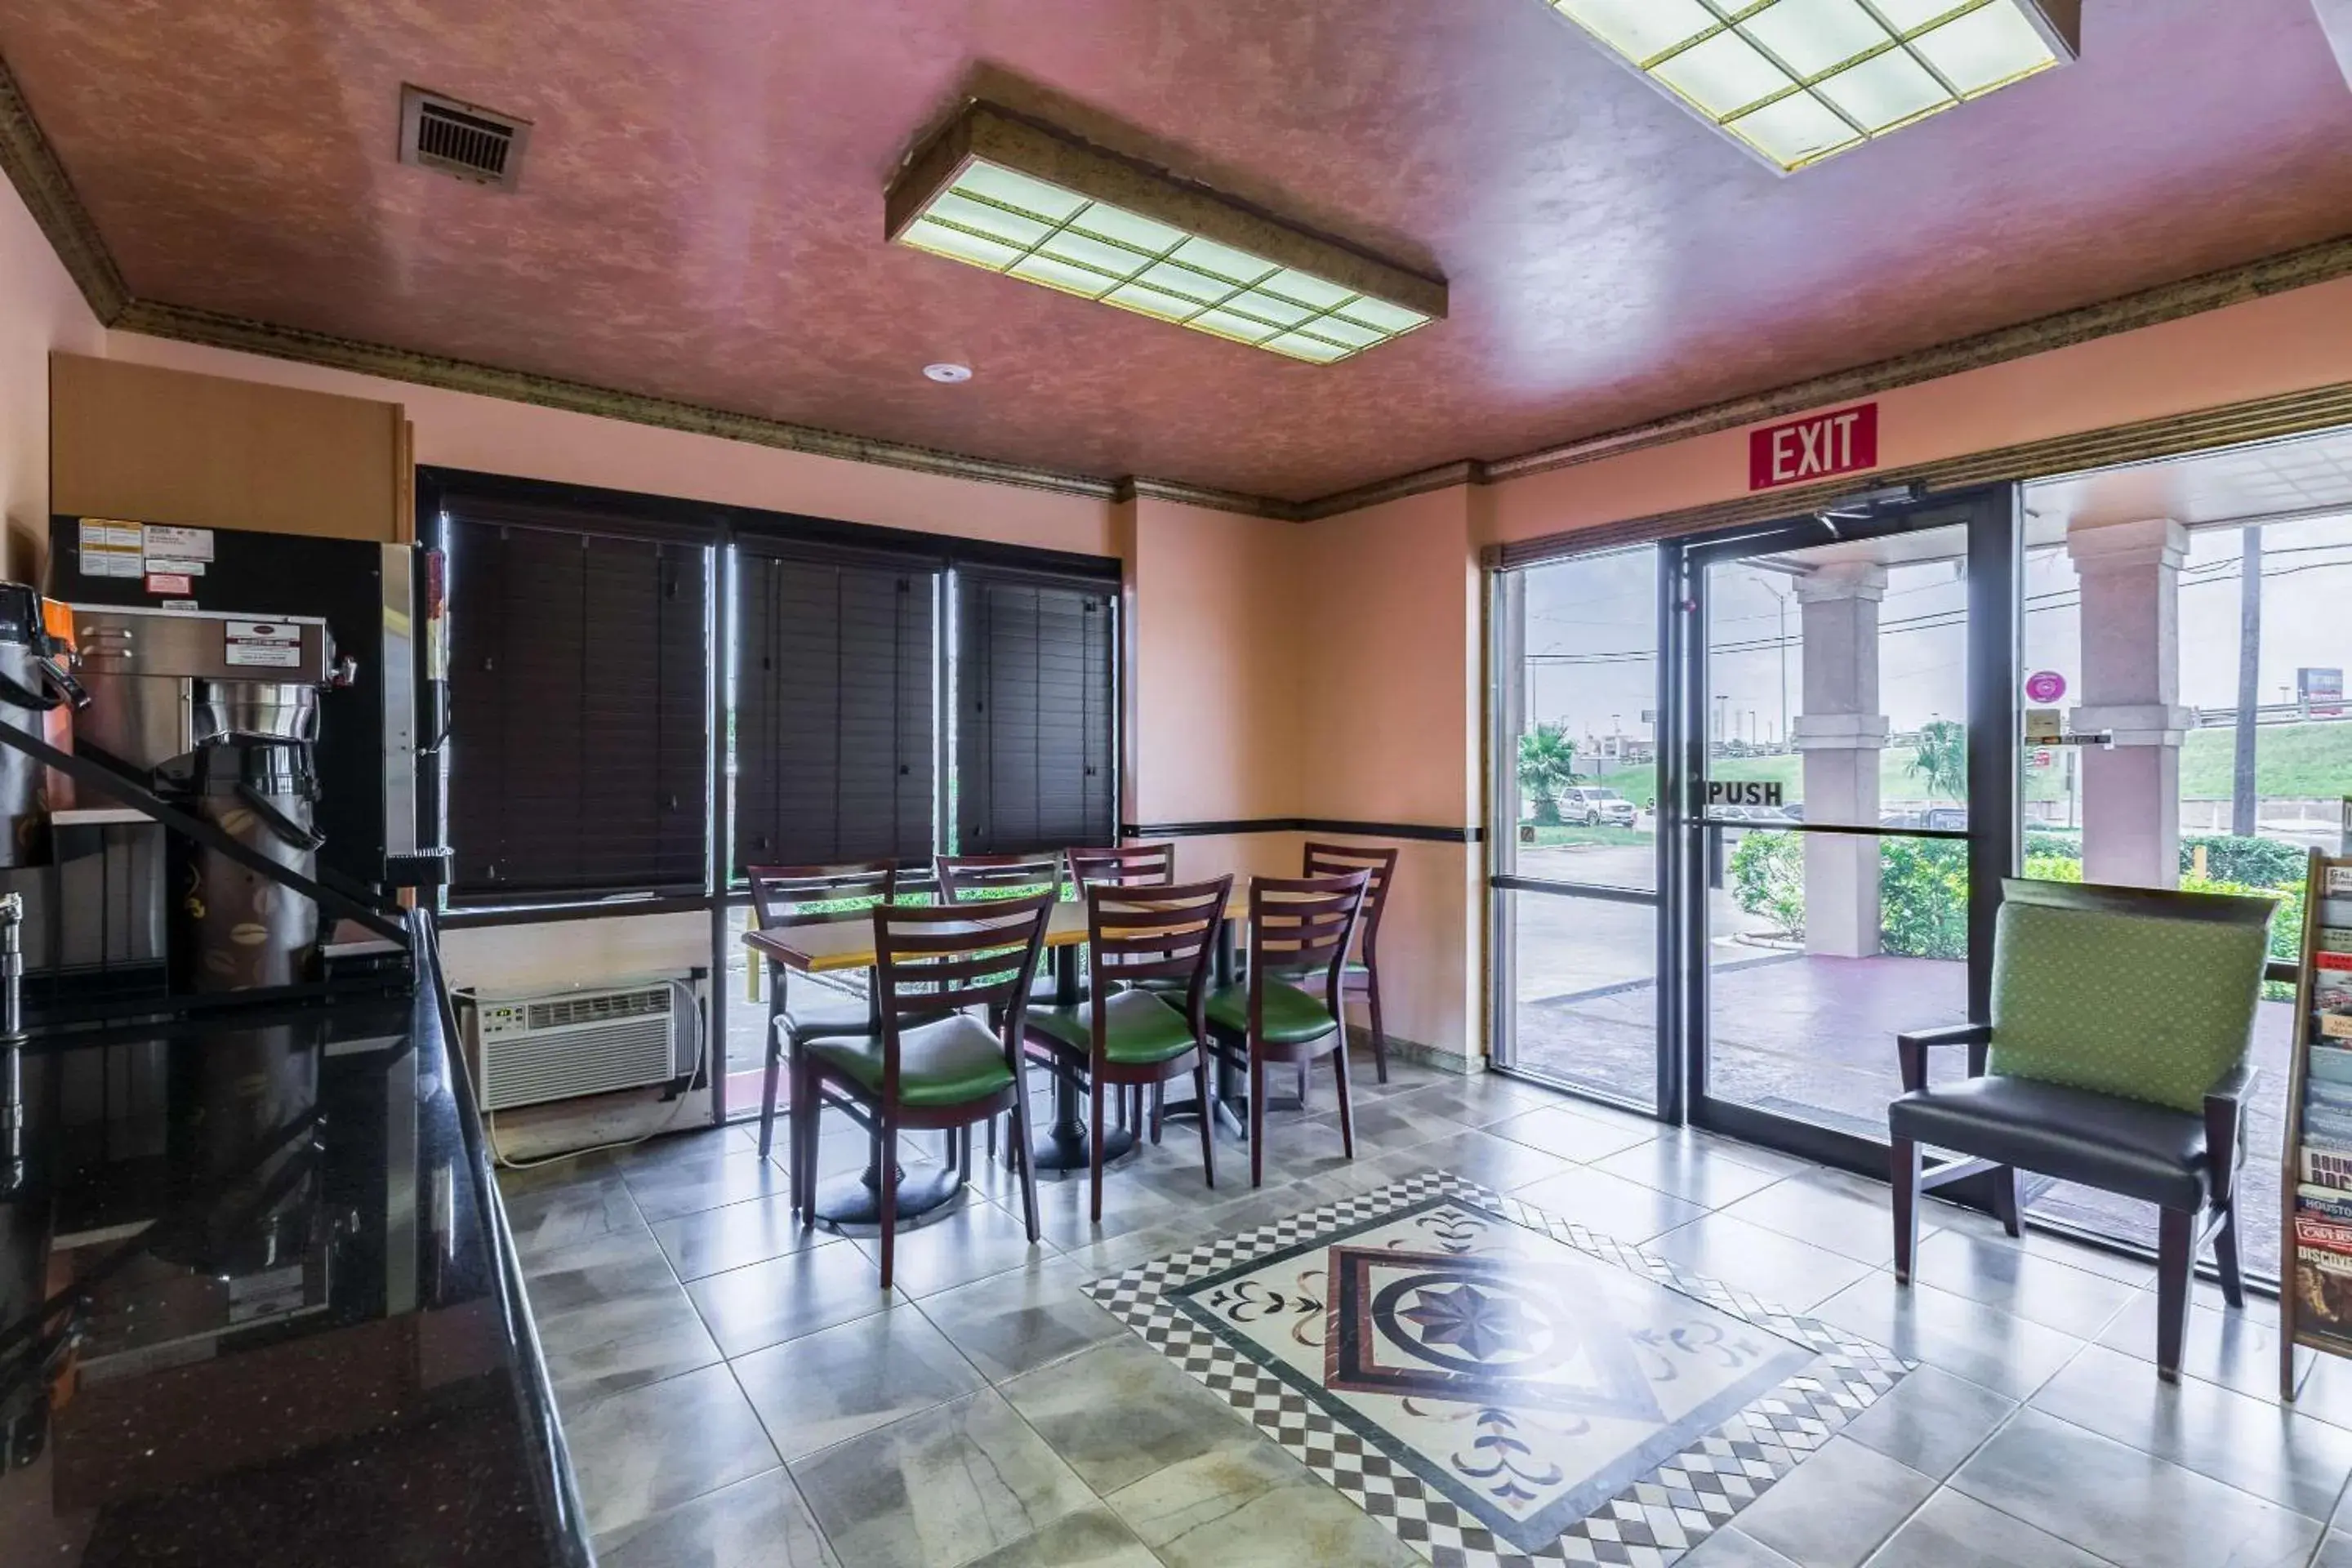 Lobby or reception in Rodeway Inn - Galveston